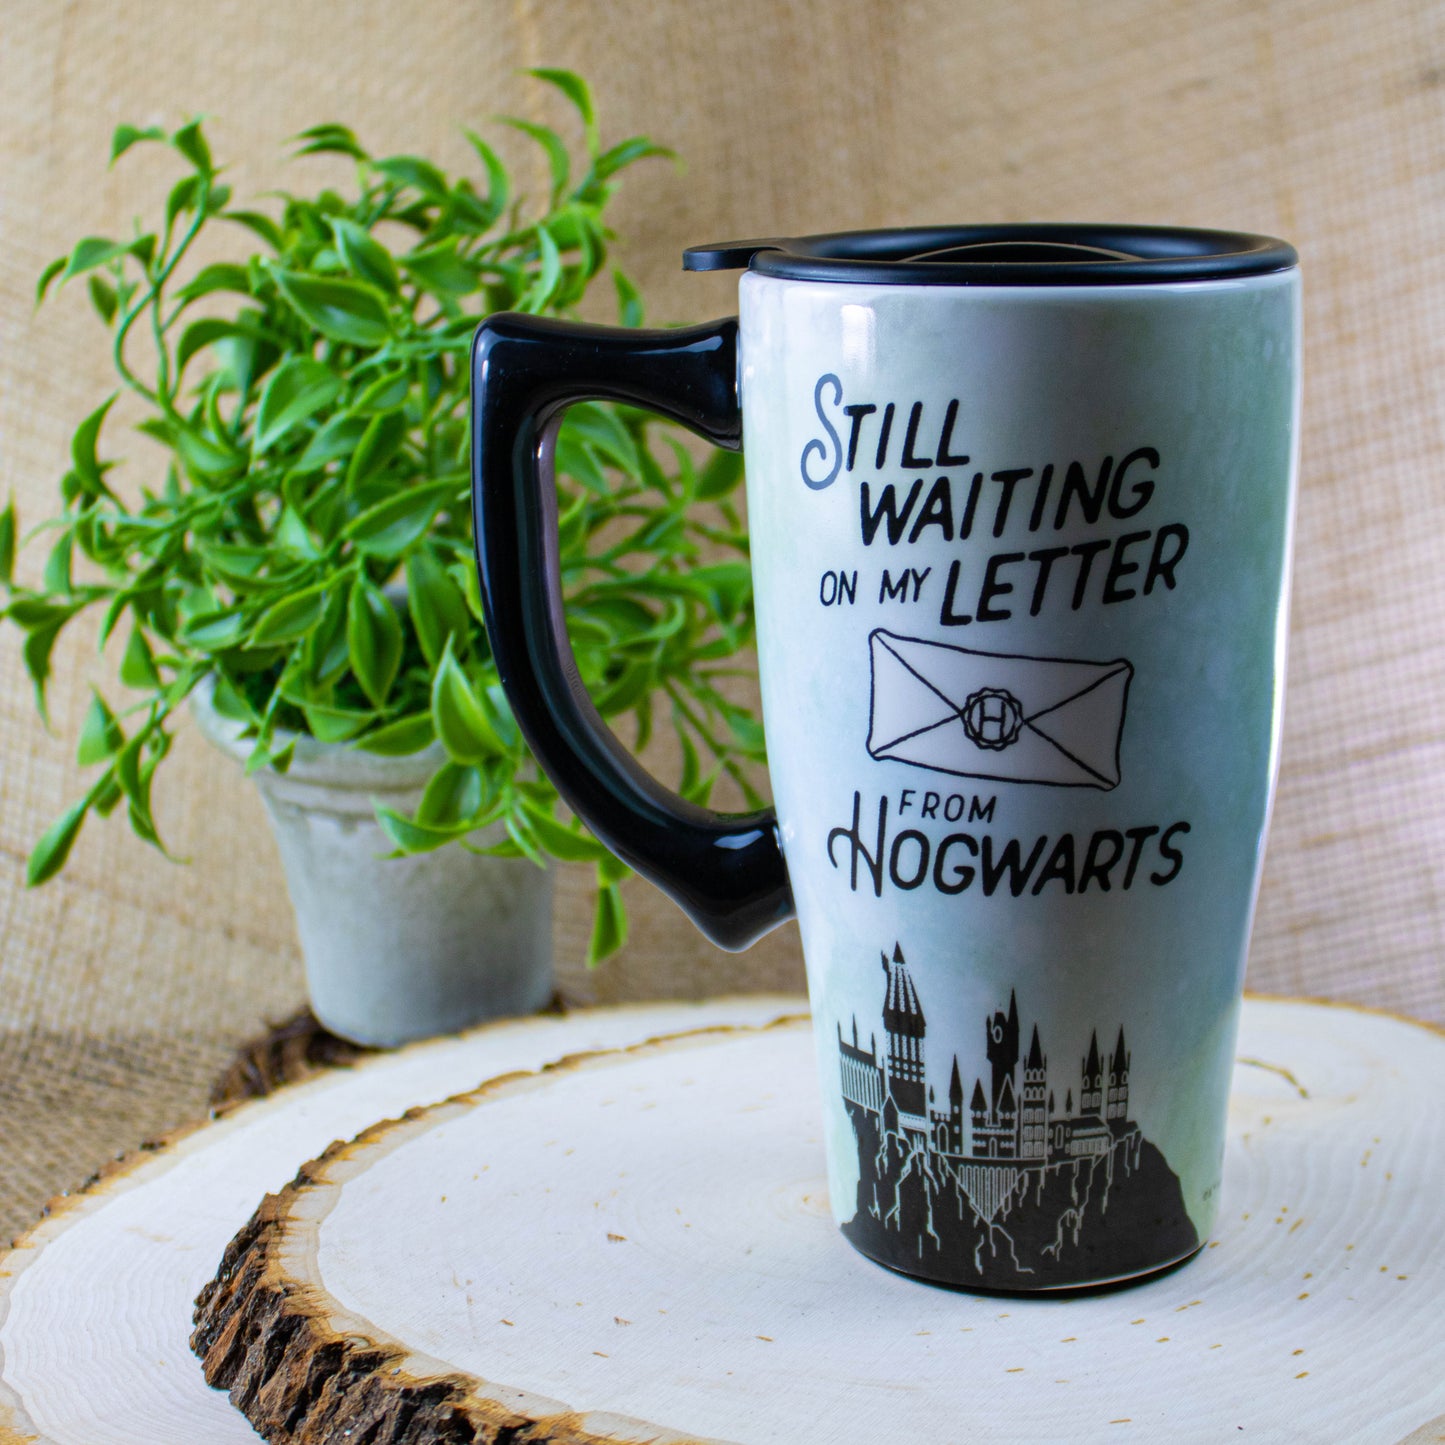 Harry Potter pottery mug